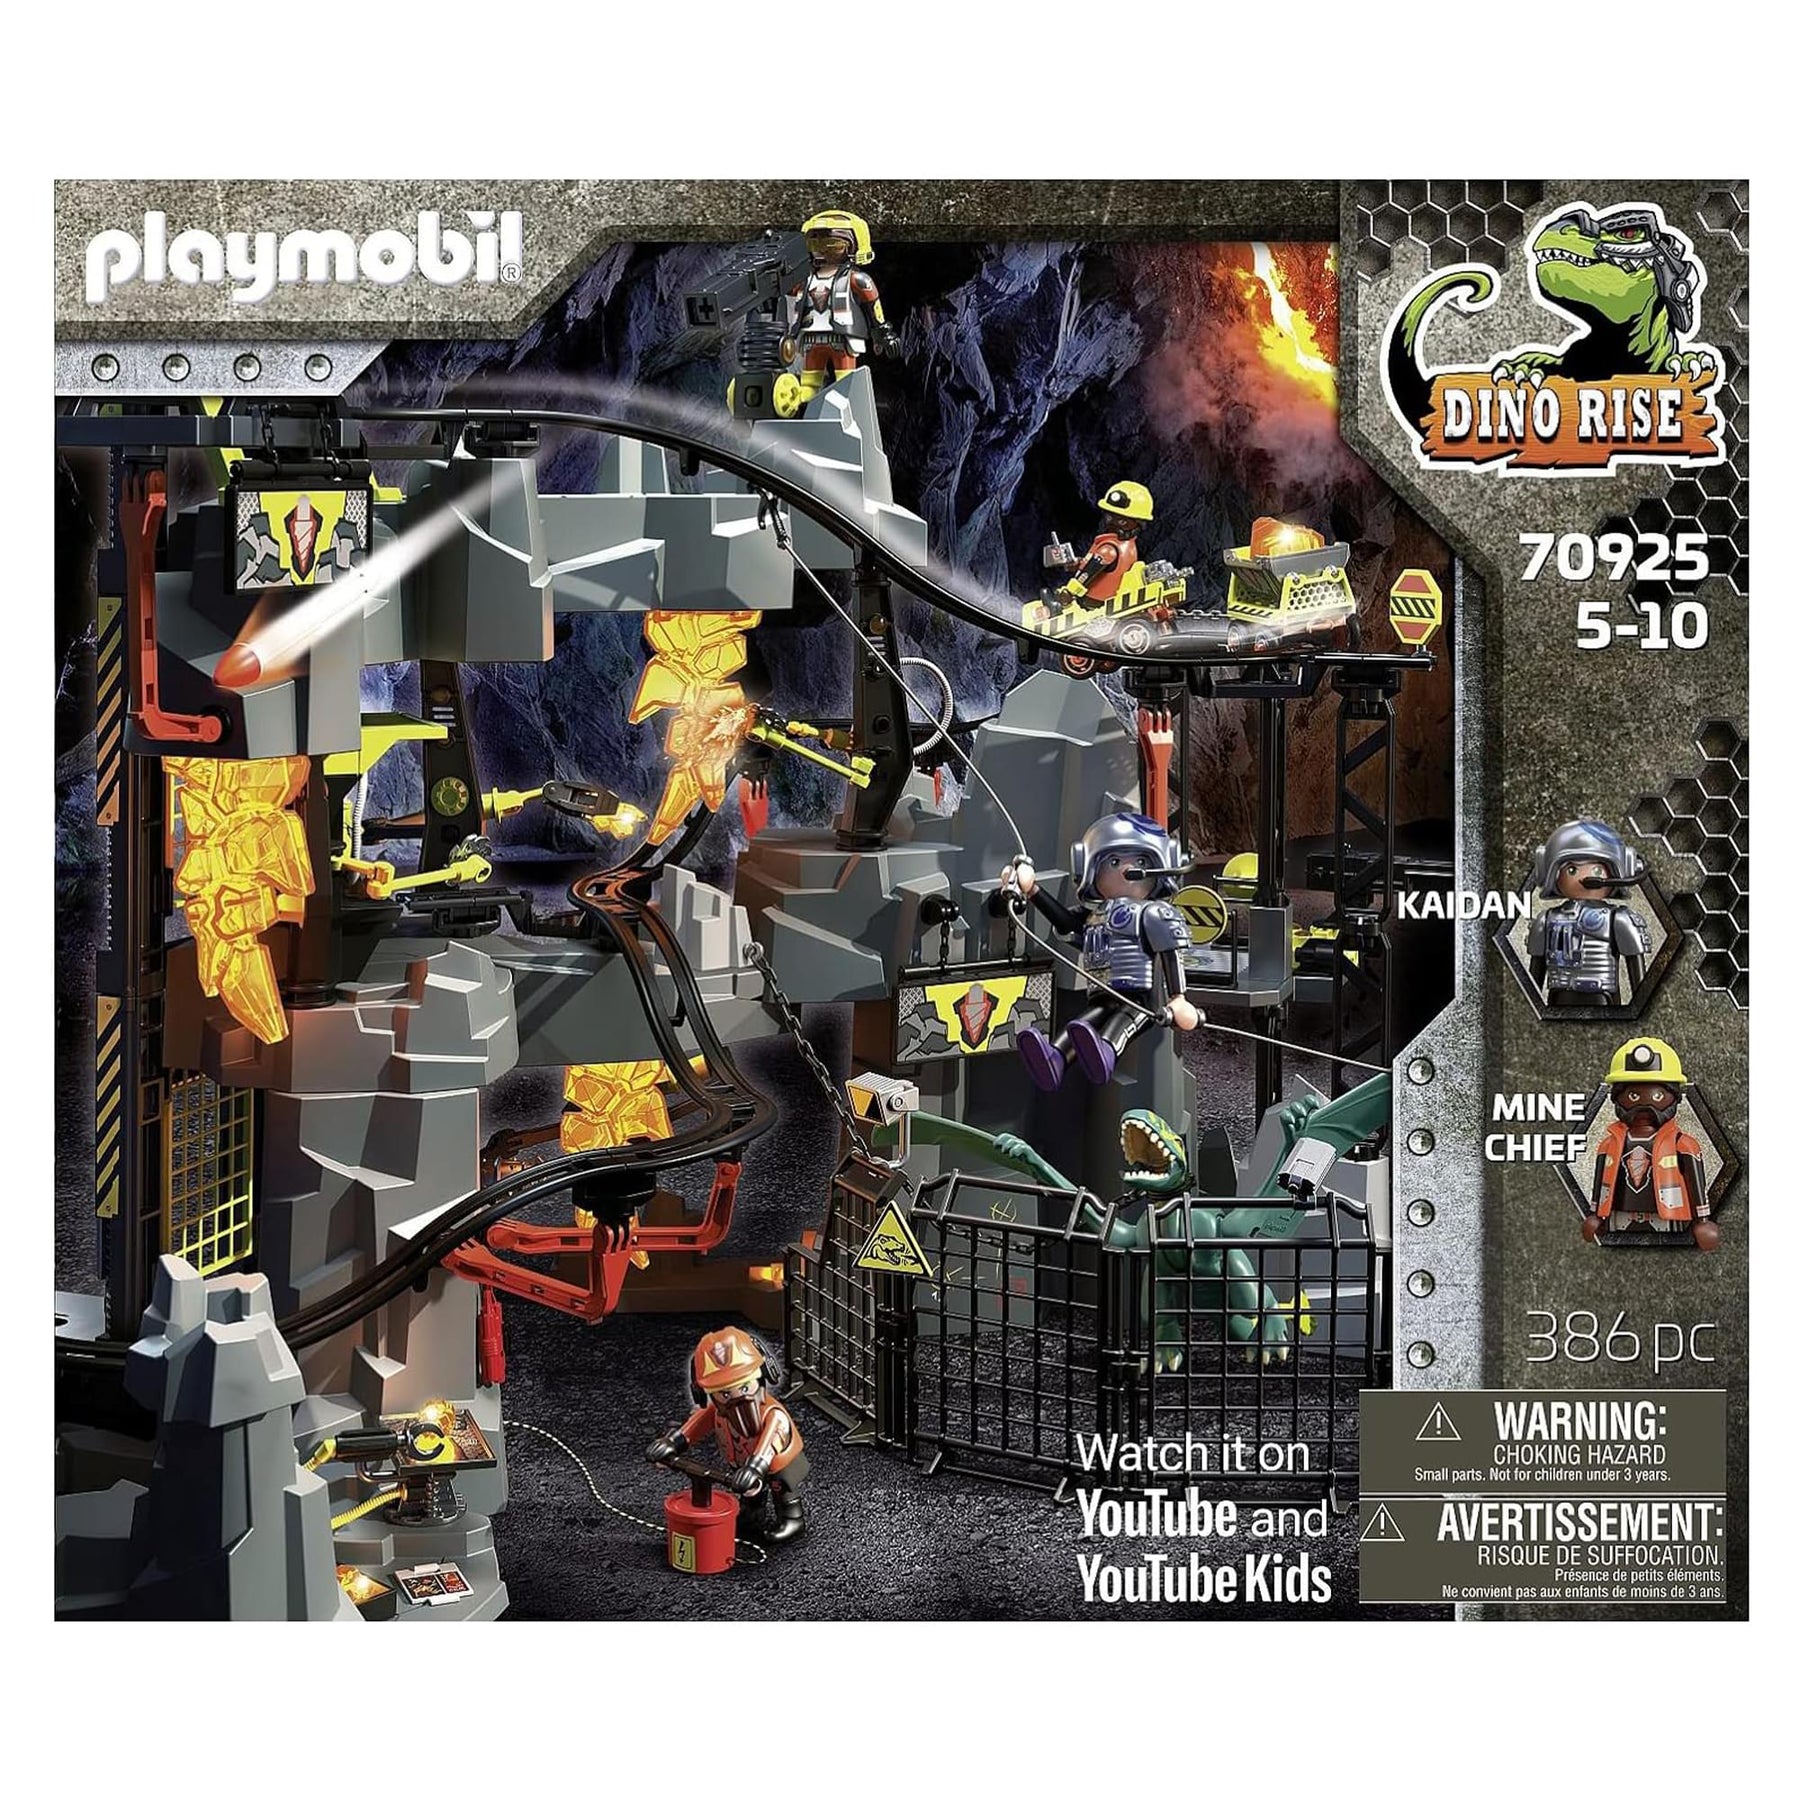 Playmobil #70925 Dino Rise Dino Mine 386 Piece Building Set